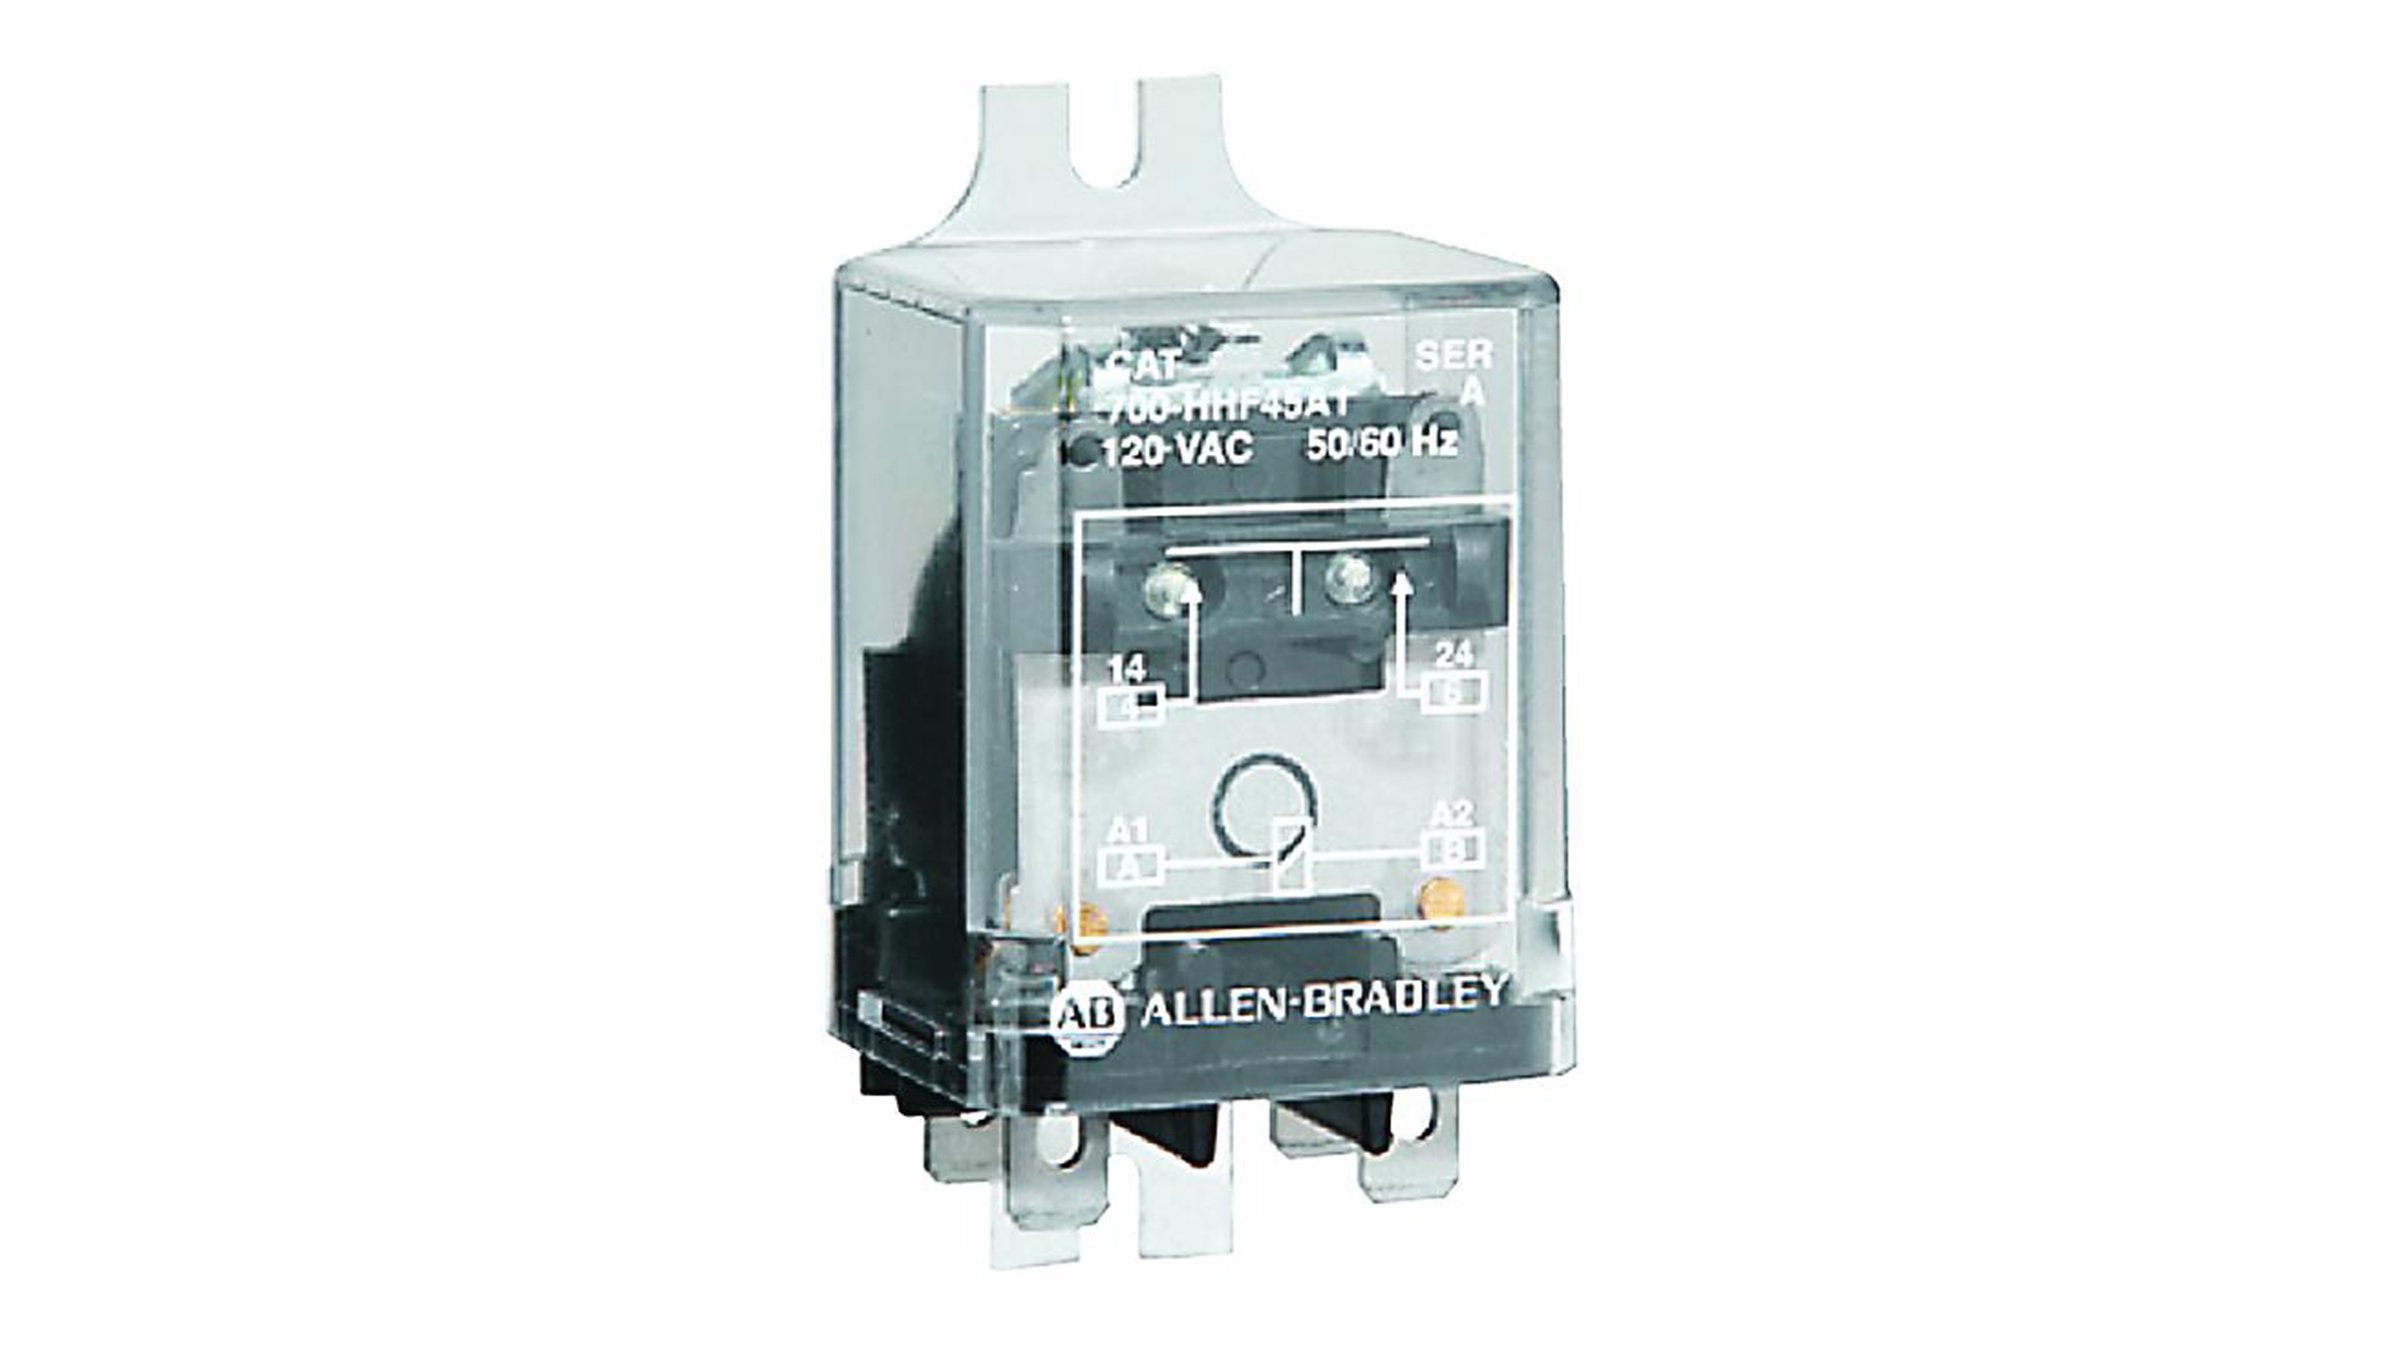 Les relais d'alimentation Allen-Bradley avec bride de montage série 700-HHF sont des relais à usage général de petite taille qui commutent des charges importantes.